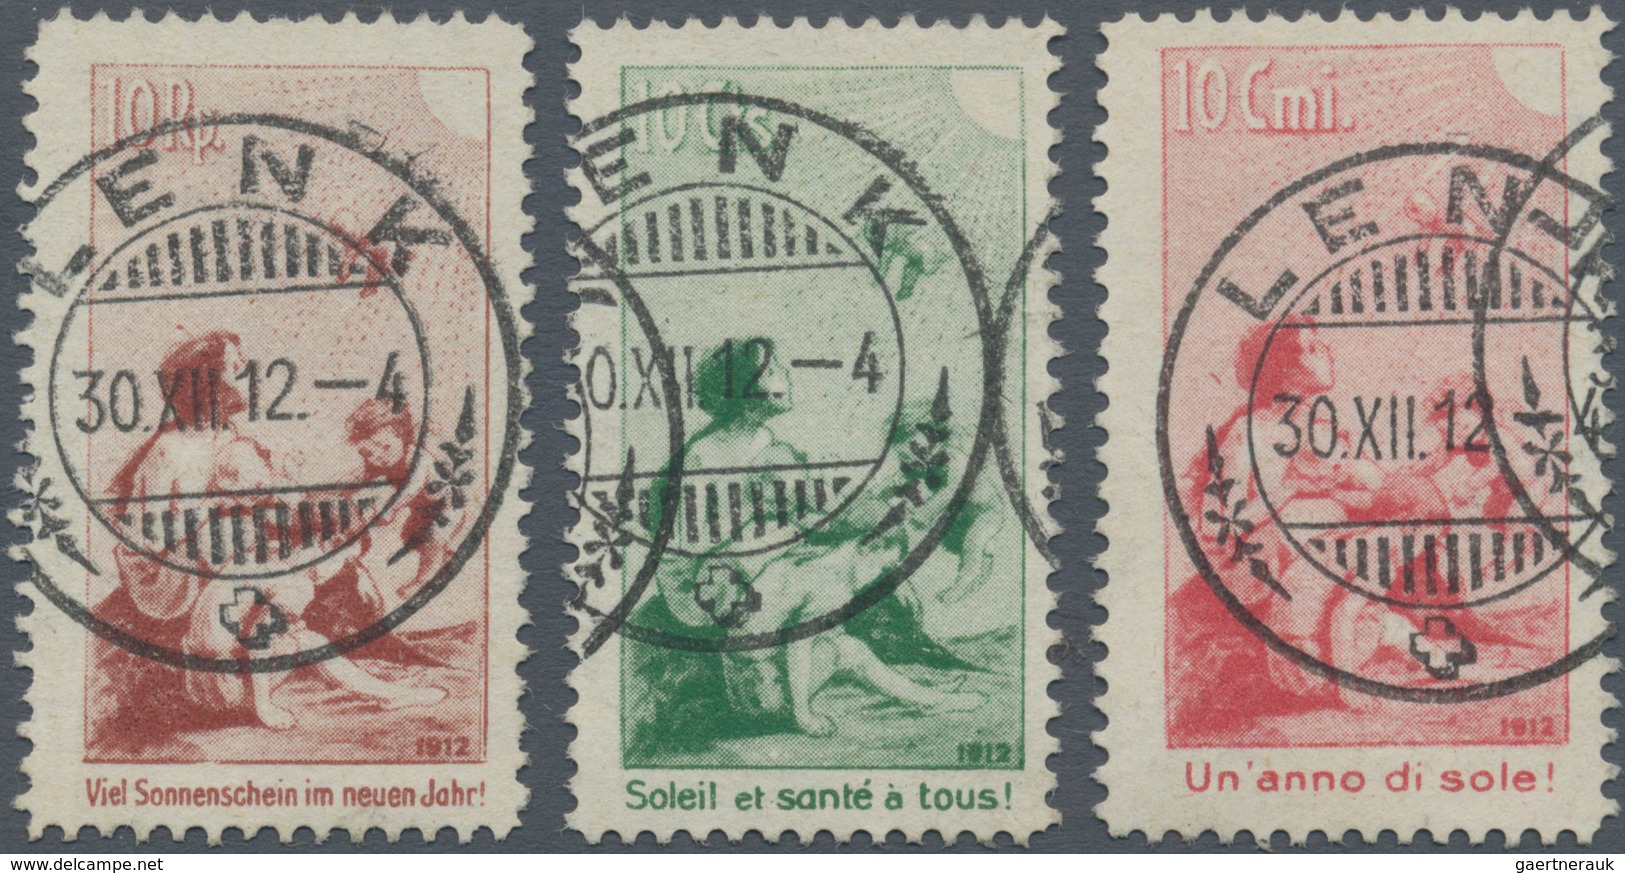 16101A Schweiz: 1912, "PRO JUVENTUTE VORLÄUFE", 10 Rp. - 10 Cmi., 3 Werte, Komplett Gestempelter Luxussatz - Neufs